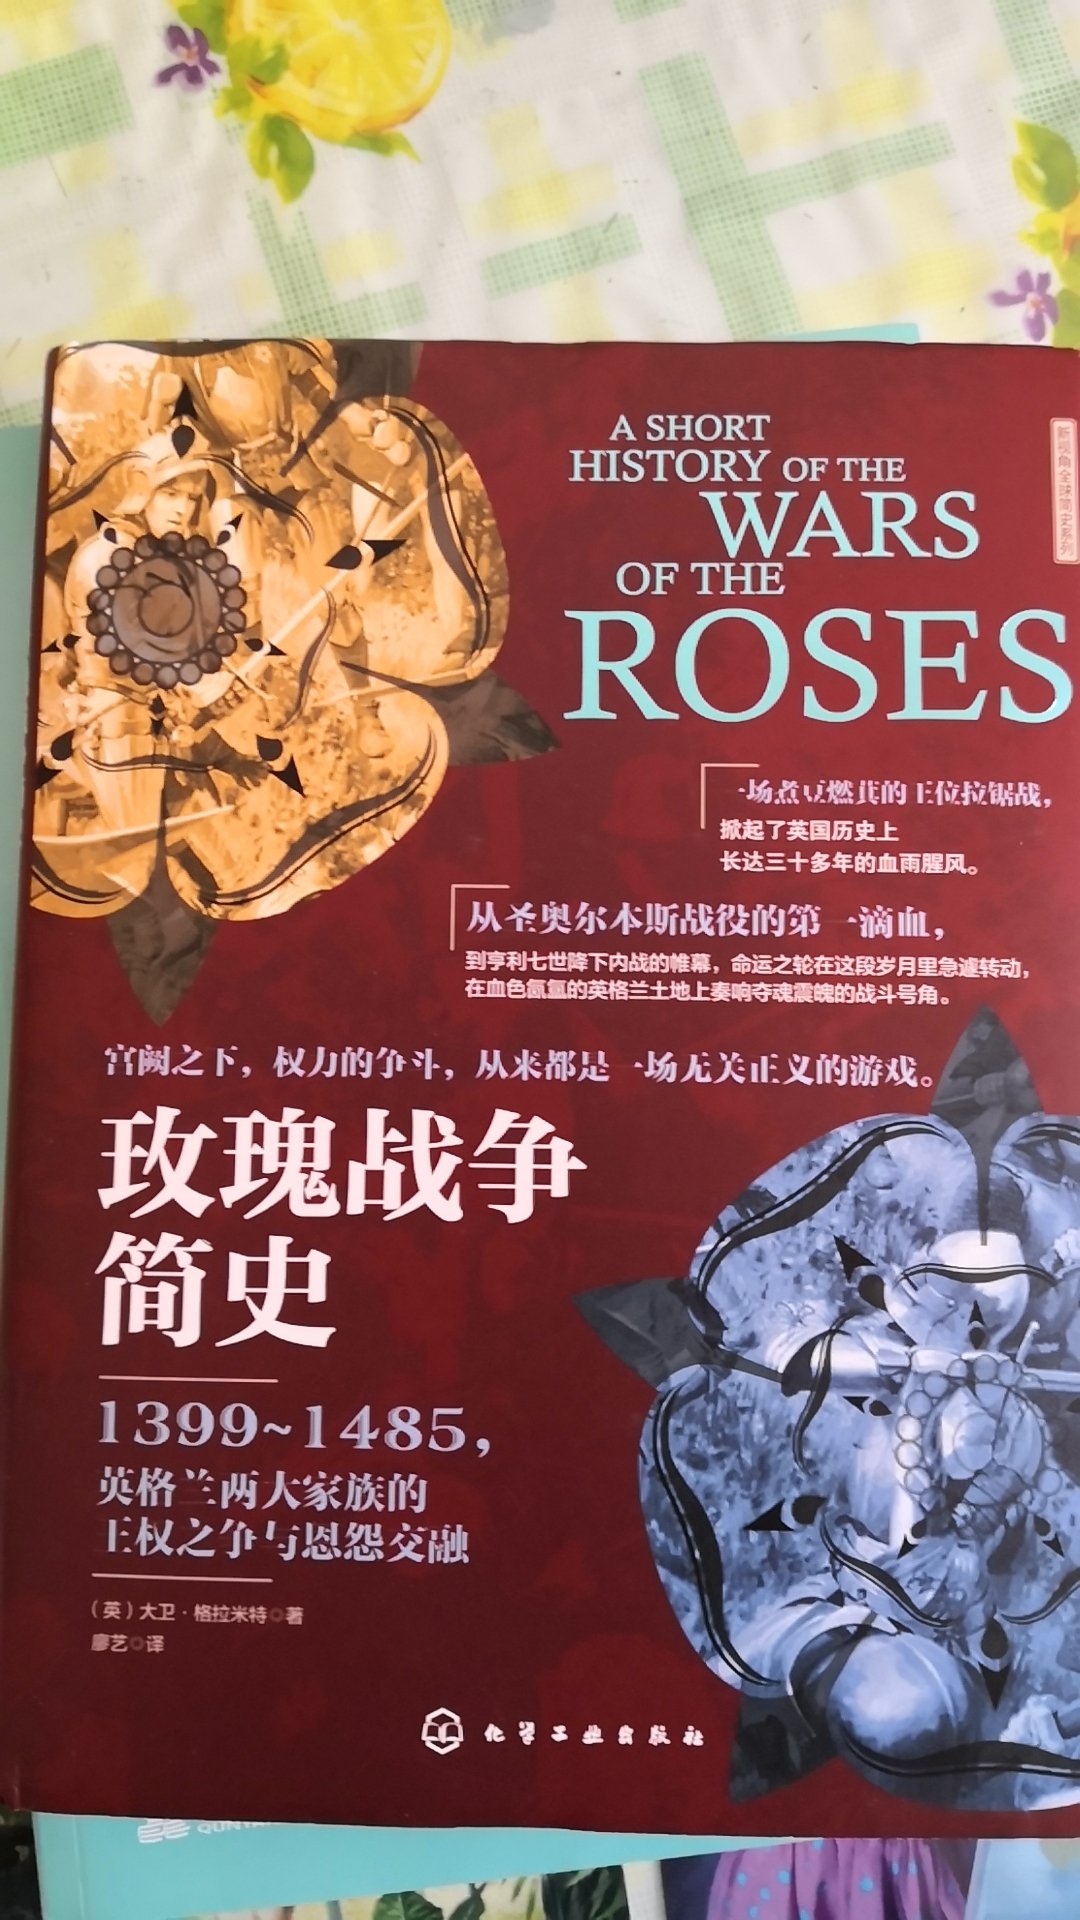 读过莎士比亚的历史剧《享利六世》，书中的历史背景就是玫瑰战争，关于玫瑰战争的史书很少，看到有售就急着买来一读，以更好的理解沙翁原著和了解这段历史。